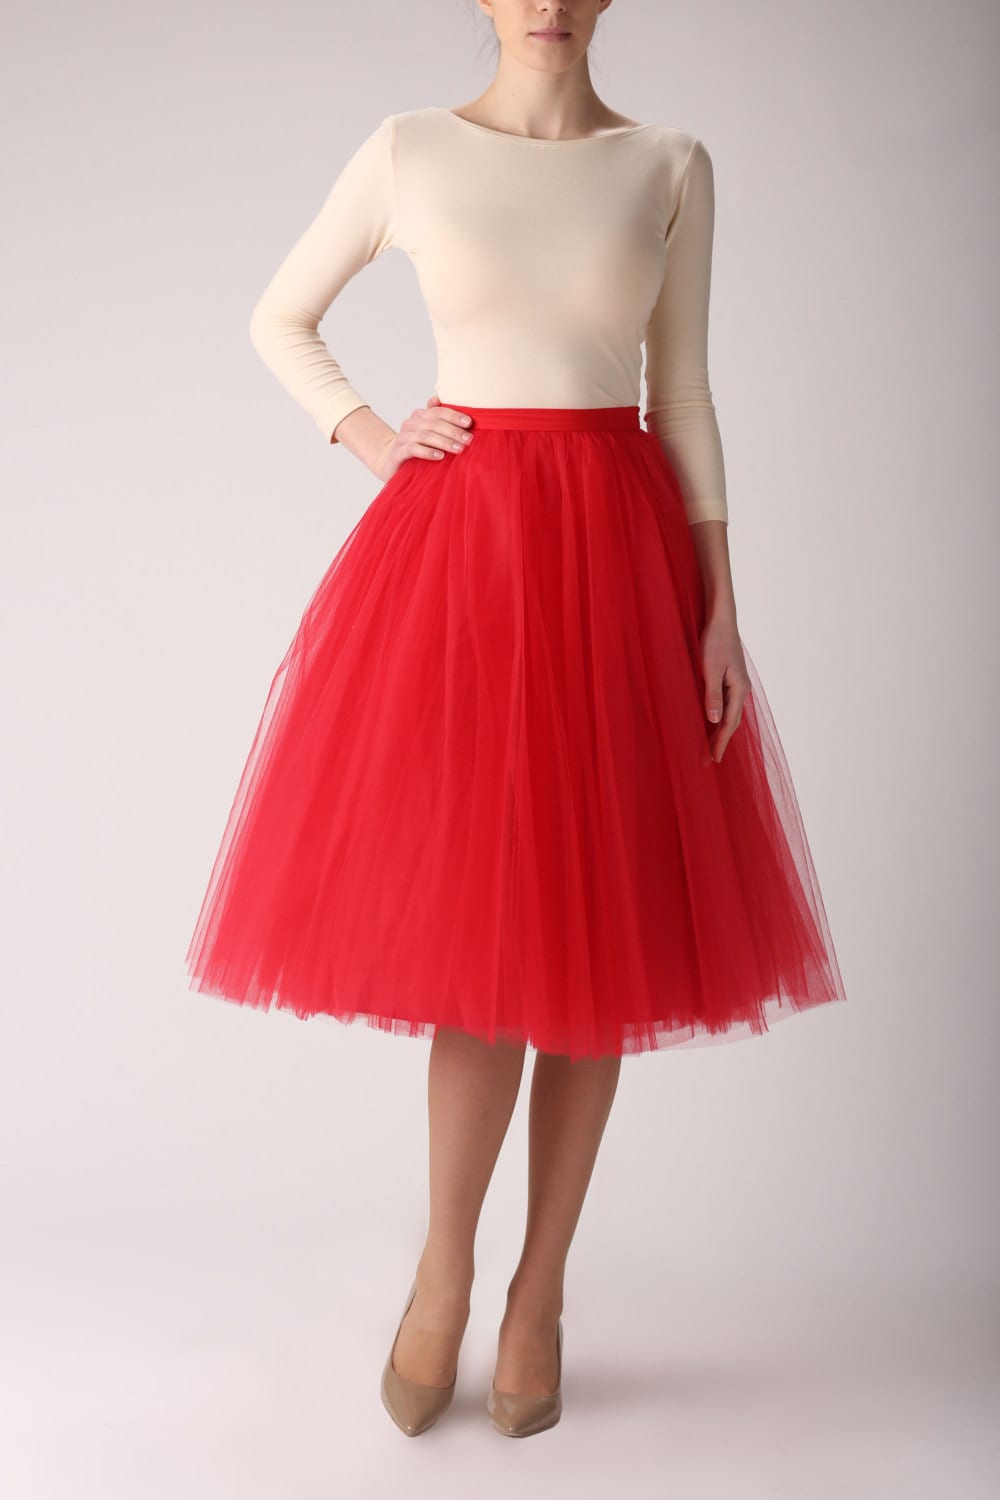 Red tulle skirt Handmade long skirt Handmade tutu skirt